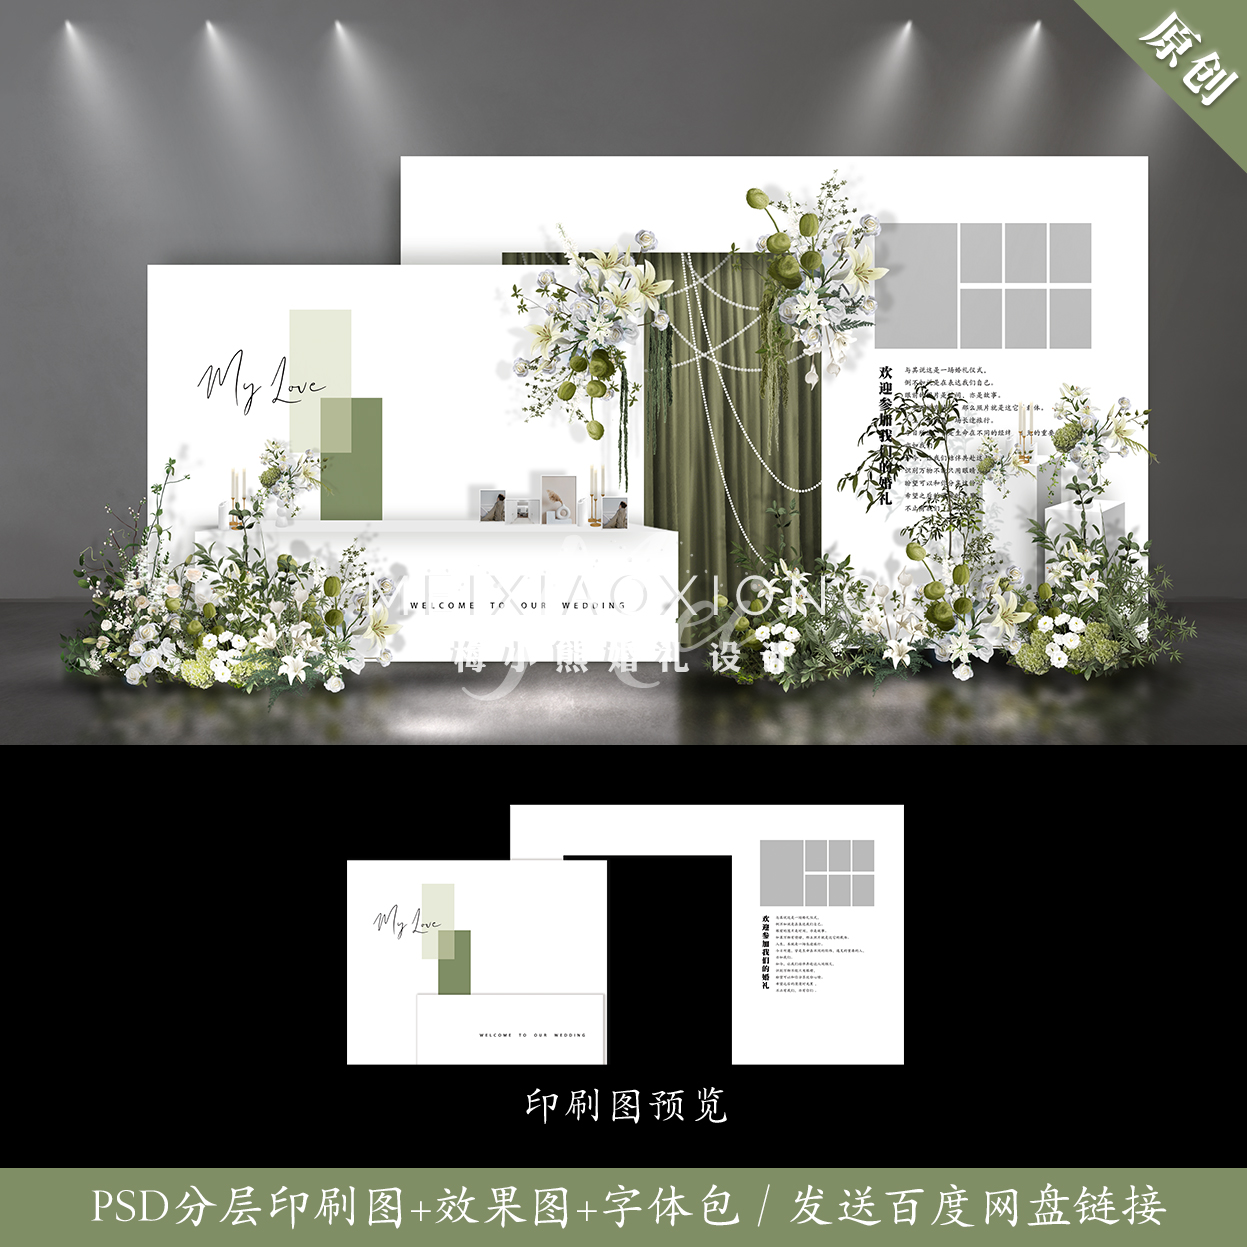 莫兰迪白绿色婚礼背景墙设计效果图 结婚照片墙留影区psd素材模板